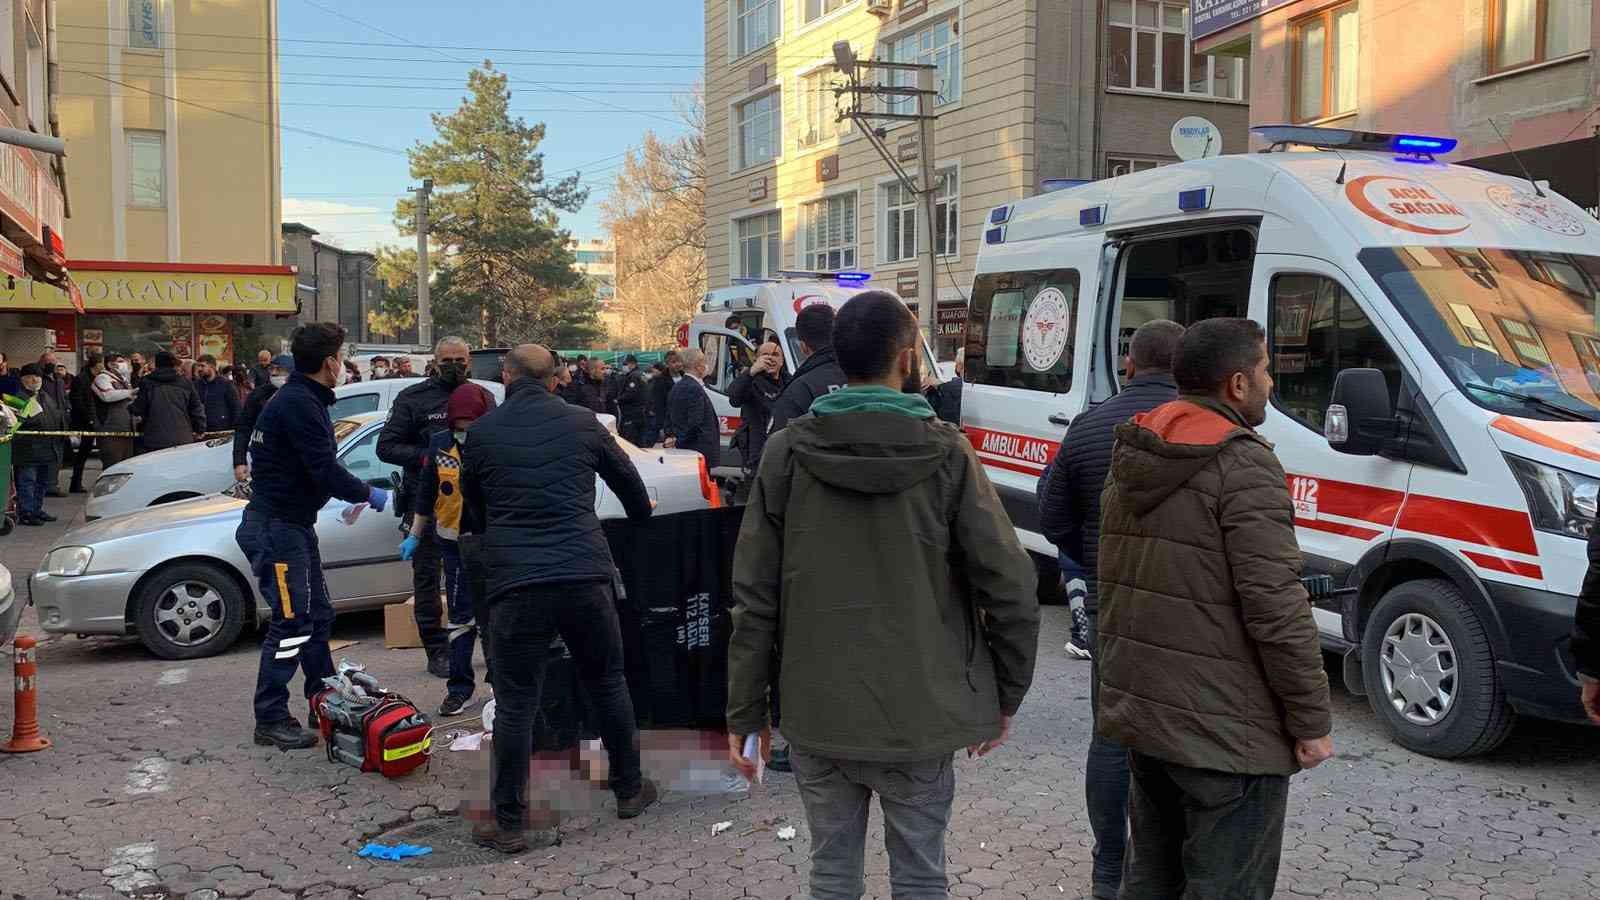 Kayseri’de sokak ortasında dehşet: 2 ölü, 1 yaralı #kayseri